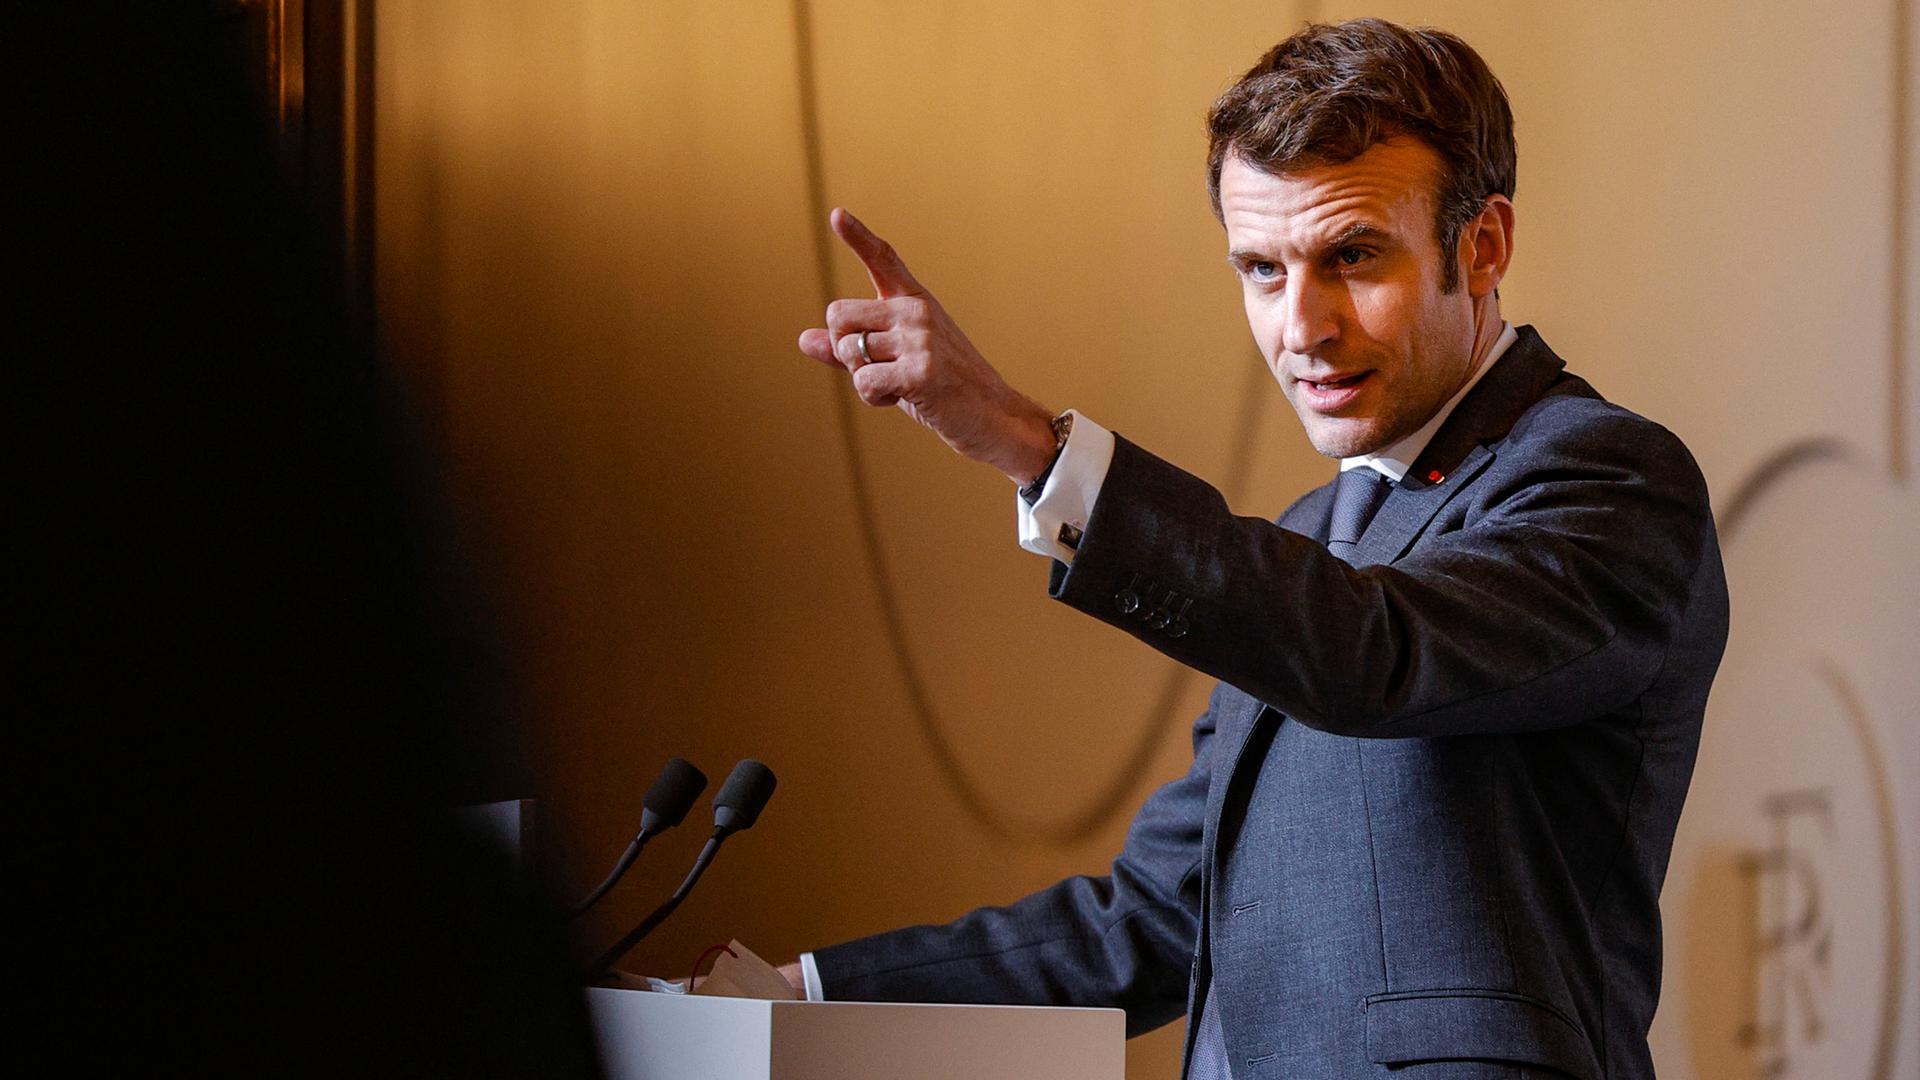 Emmanuel Macron spricht an einem Rednerpult und streckt den Zeigefinger in einer zukunftsweisenden Geste in die Luft.